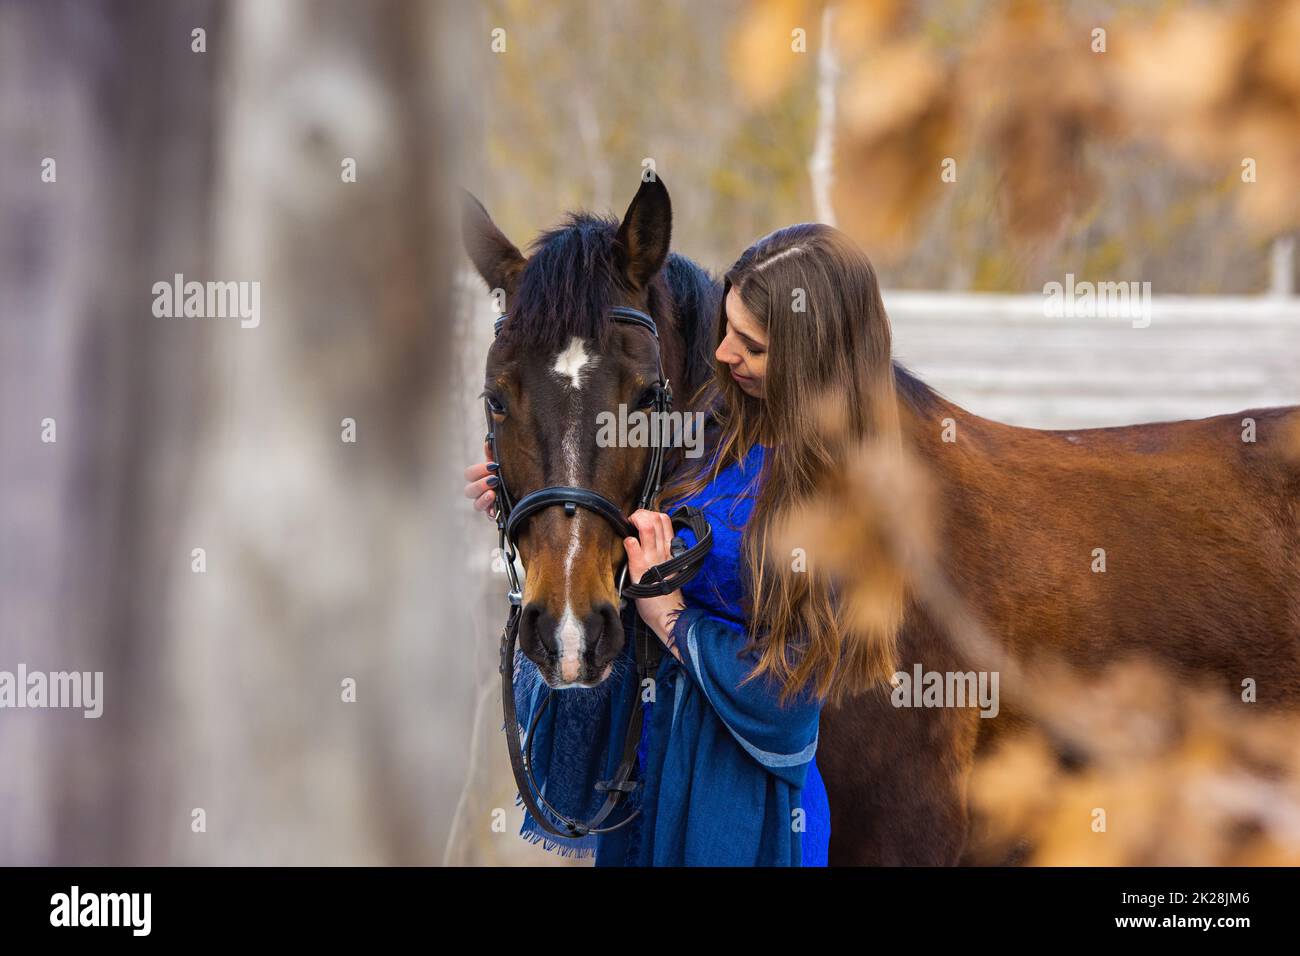 Berührendes Porträt eines Mädchens in einem blauen Kleid mit einem Pferd Stockfoto